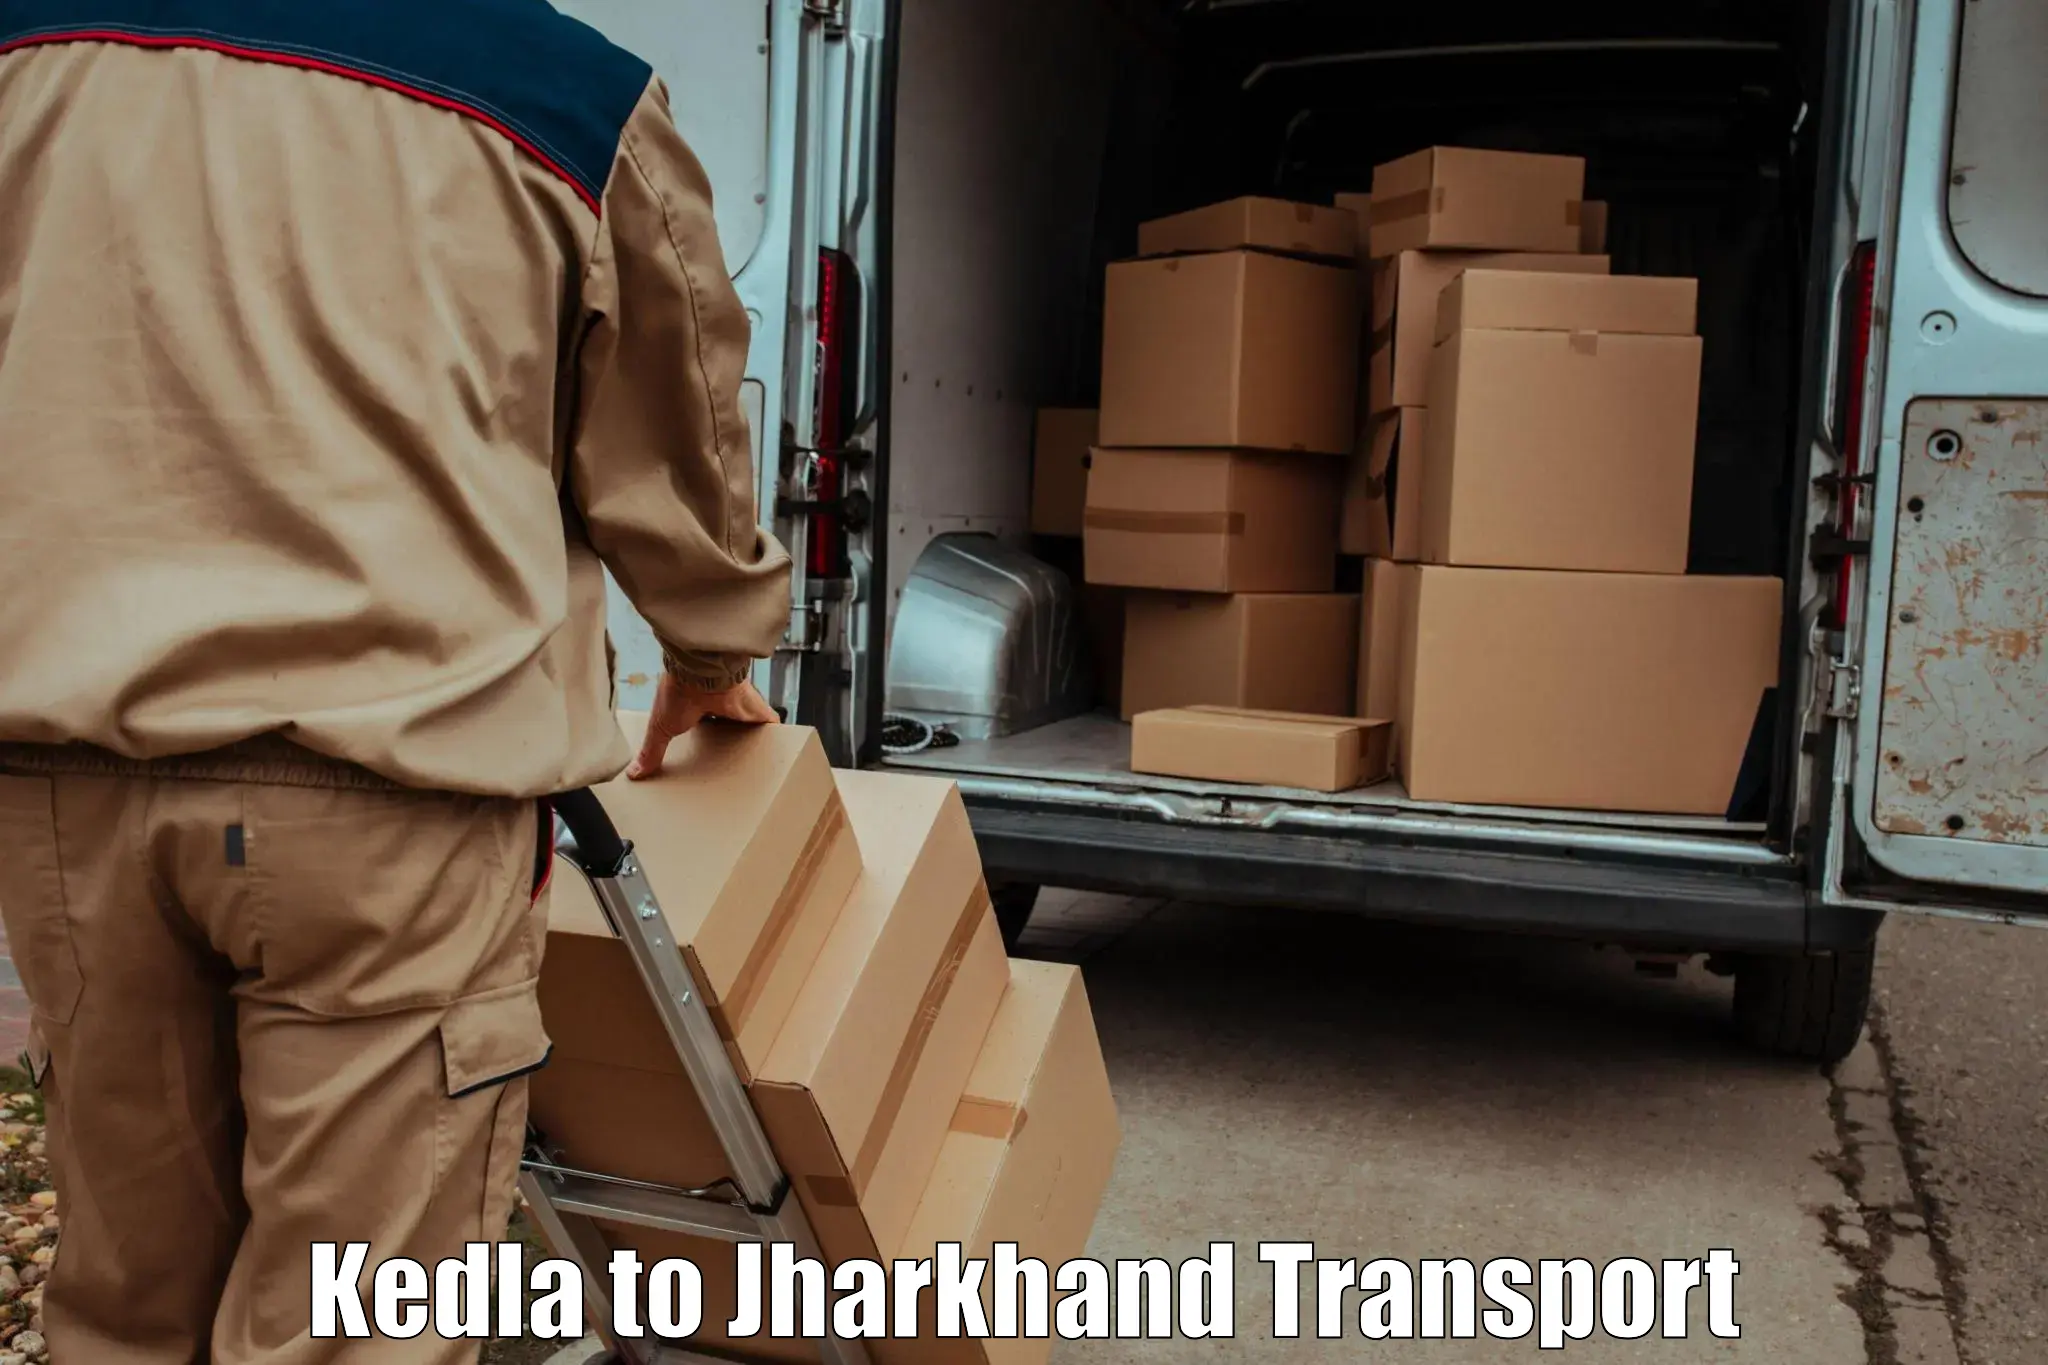 Interstate transport services Kedla to Hariharganj